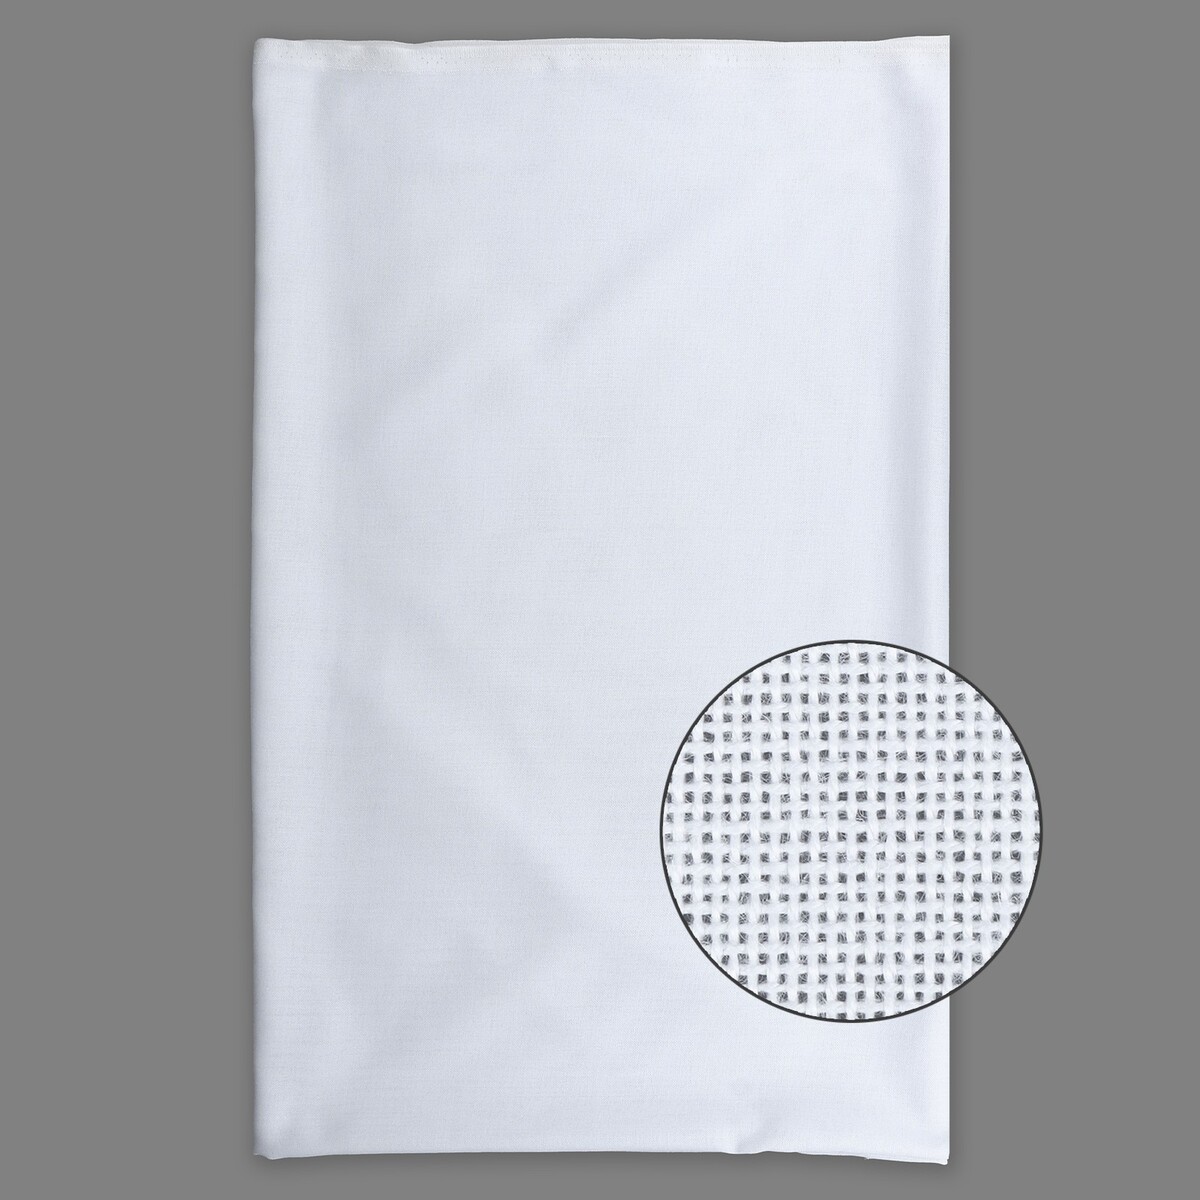 Канва для вышивания, равномерного переплетения, 100 × 150 см, цвет белый канва для вышивания равномерного переплетения 100 × 150 см бежевый